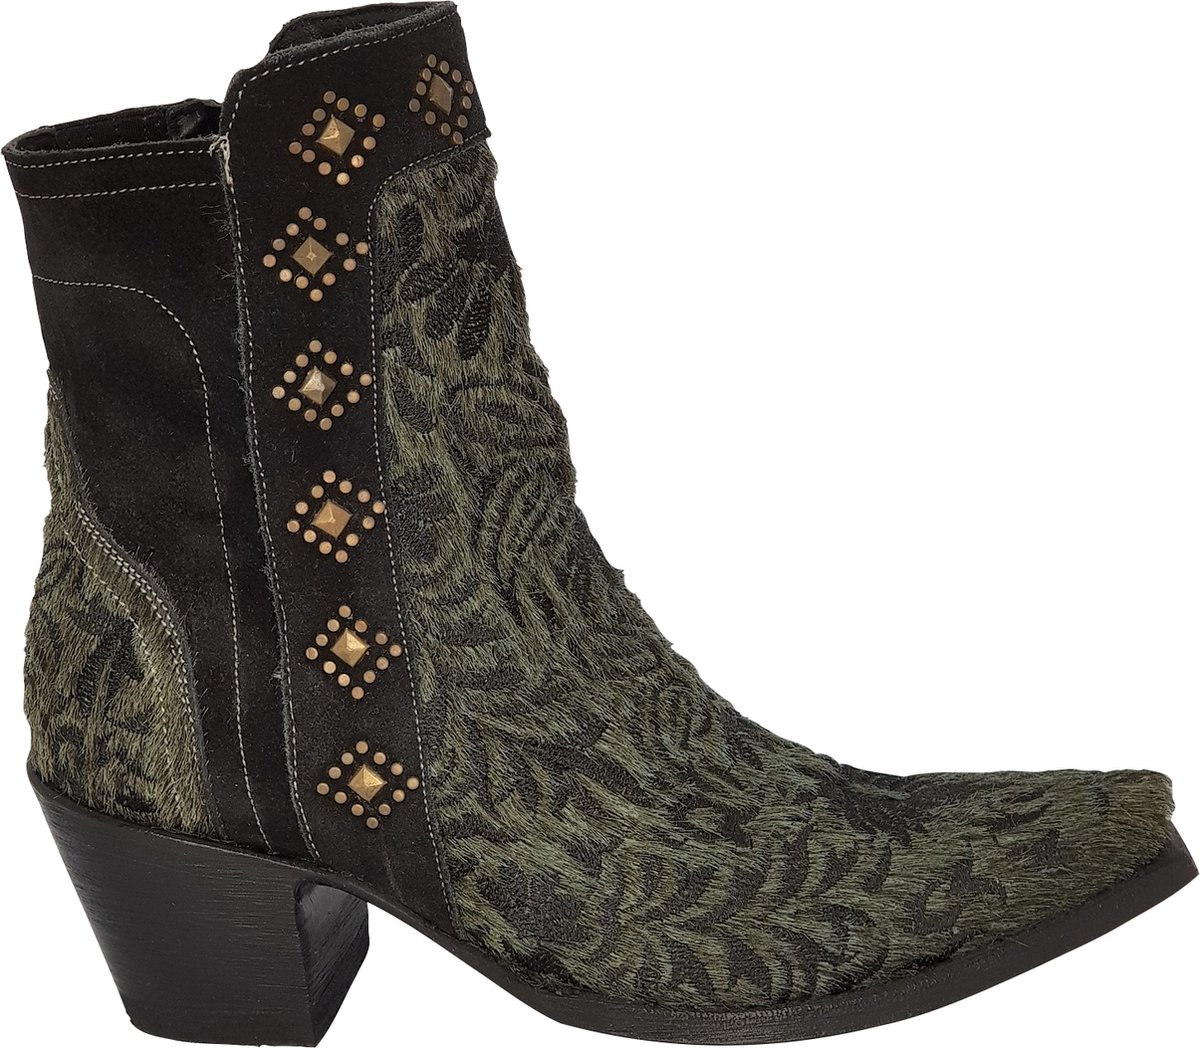 Cowboy laarzen dames Old Gringo Wink - echt leer met haartjes - groen/zwart - studs - spitse neus - maat 36